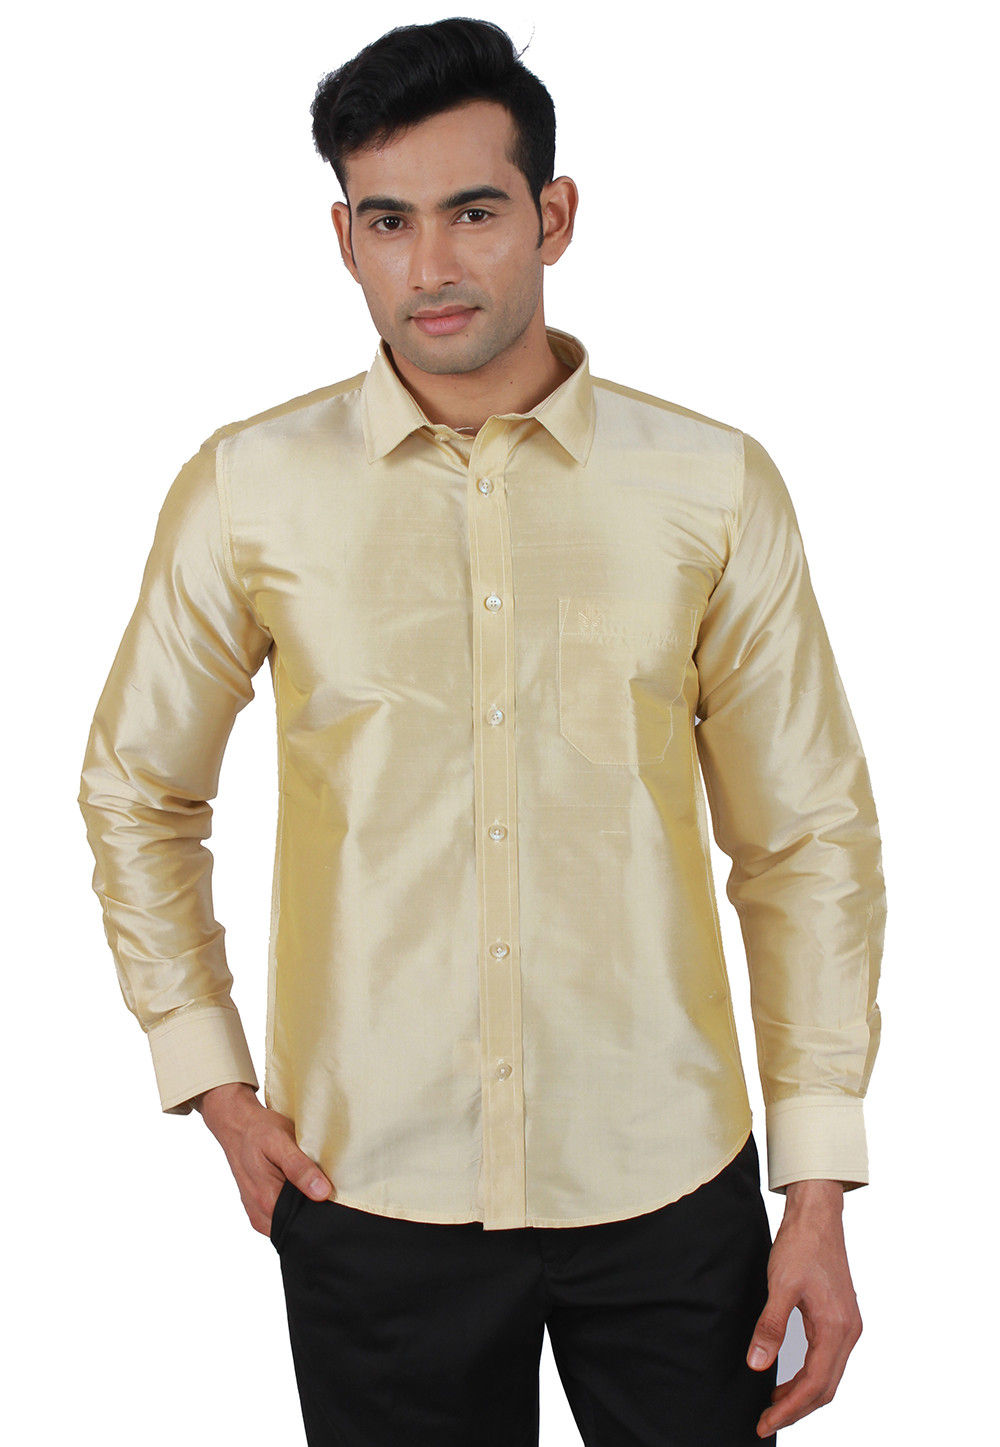 https://medias.utsavfashion.com/media/catalog/product/cache/1/image/1000x/040ec09b1e35df139433887a97daa66f/p/l/plain-pure-raw-silk-shirt-in-cream-v1-mxt97.jpg